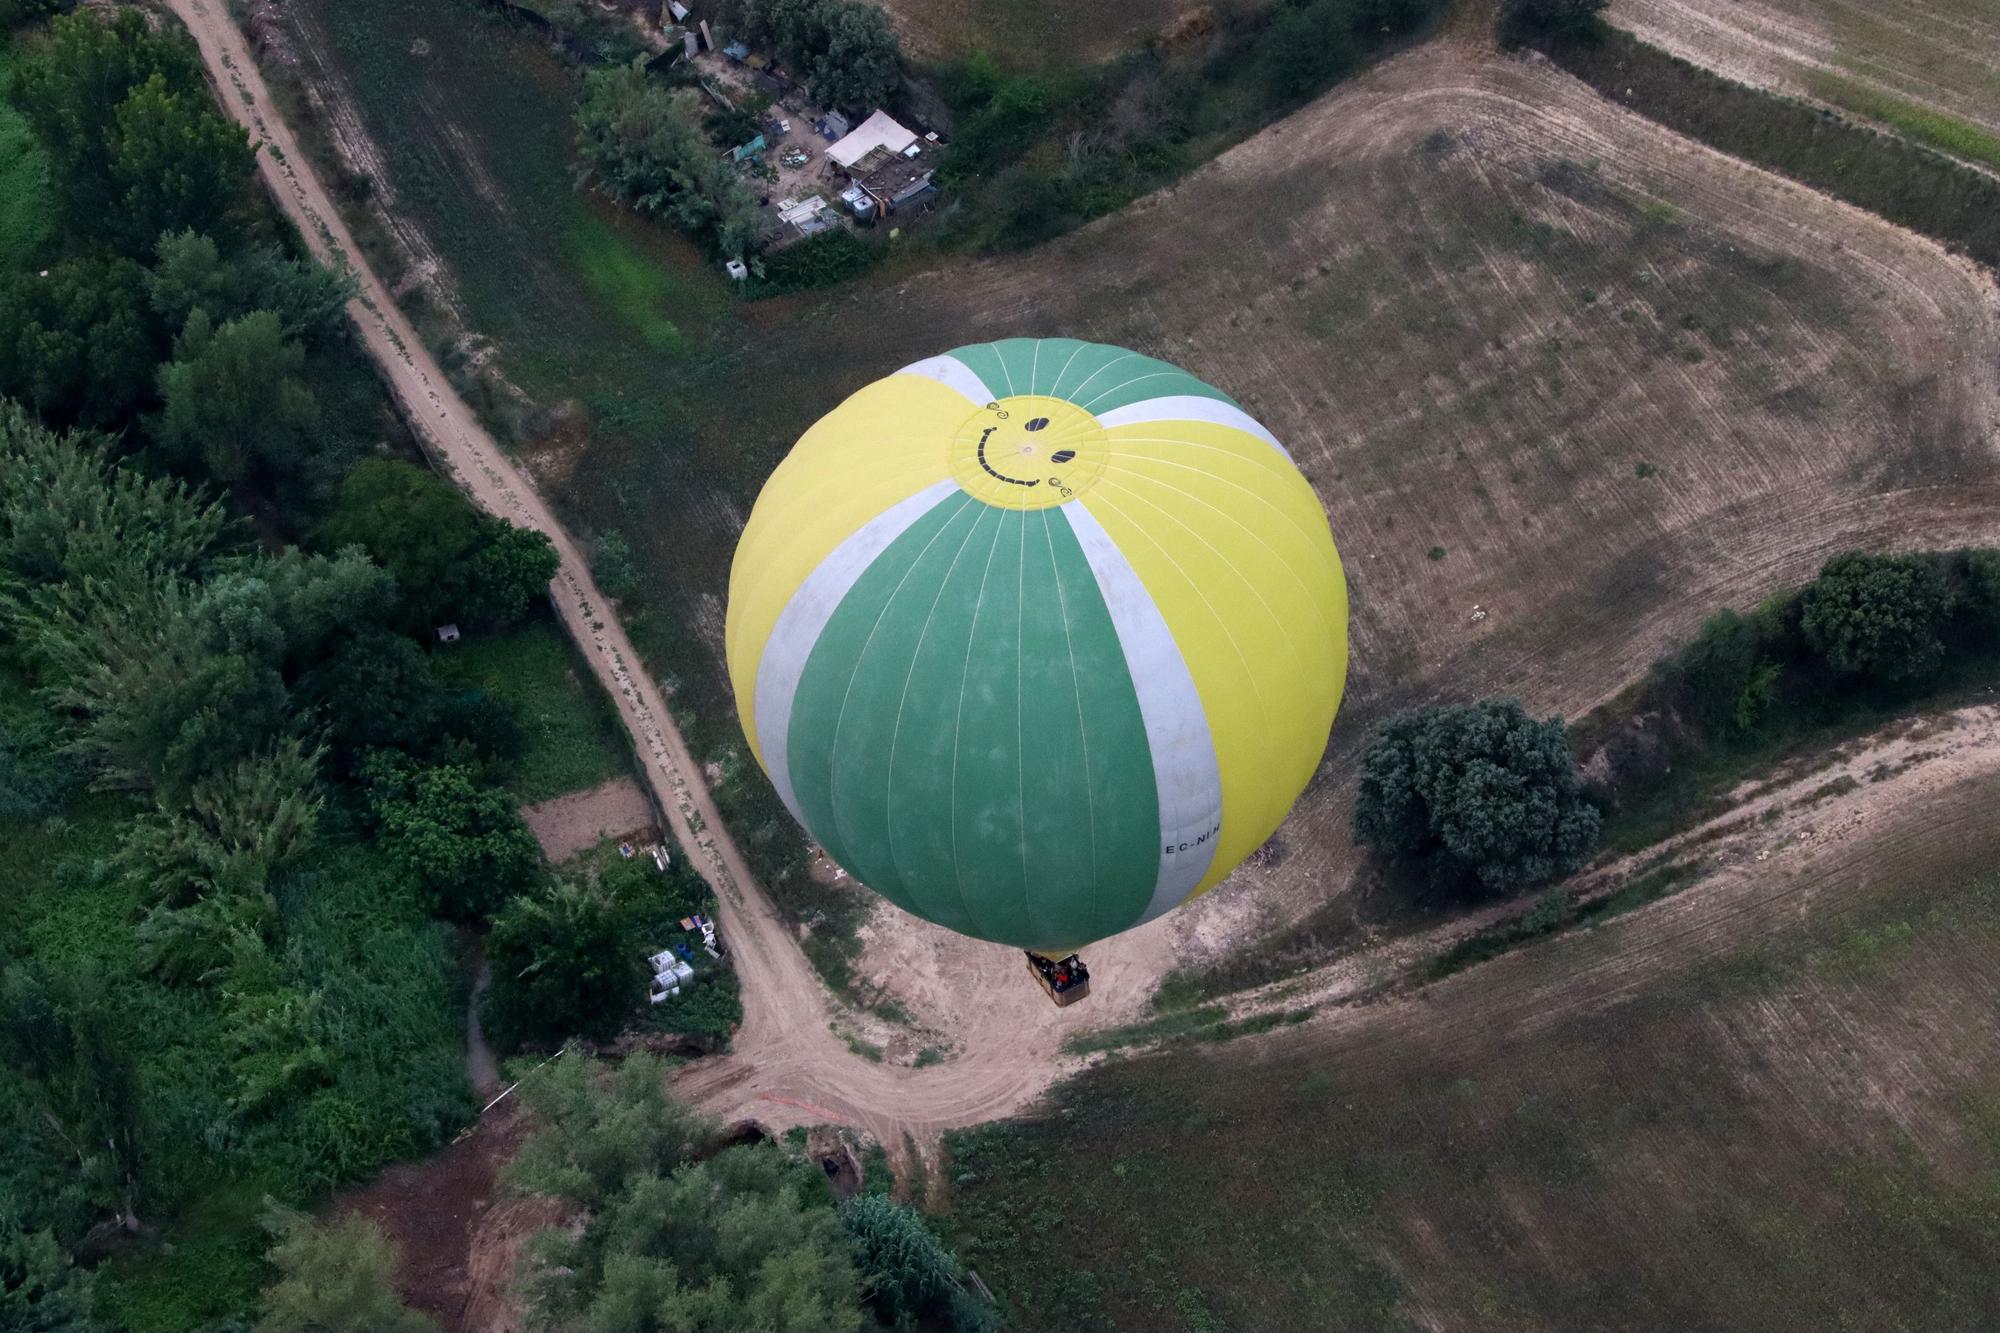 L'European Ballon Festival 2023 alça el vol